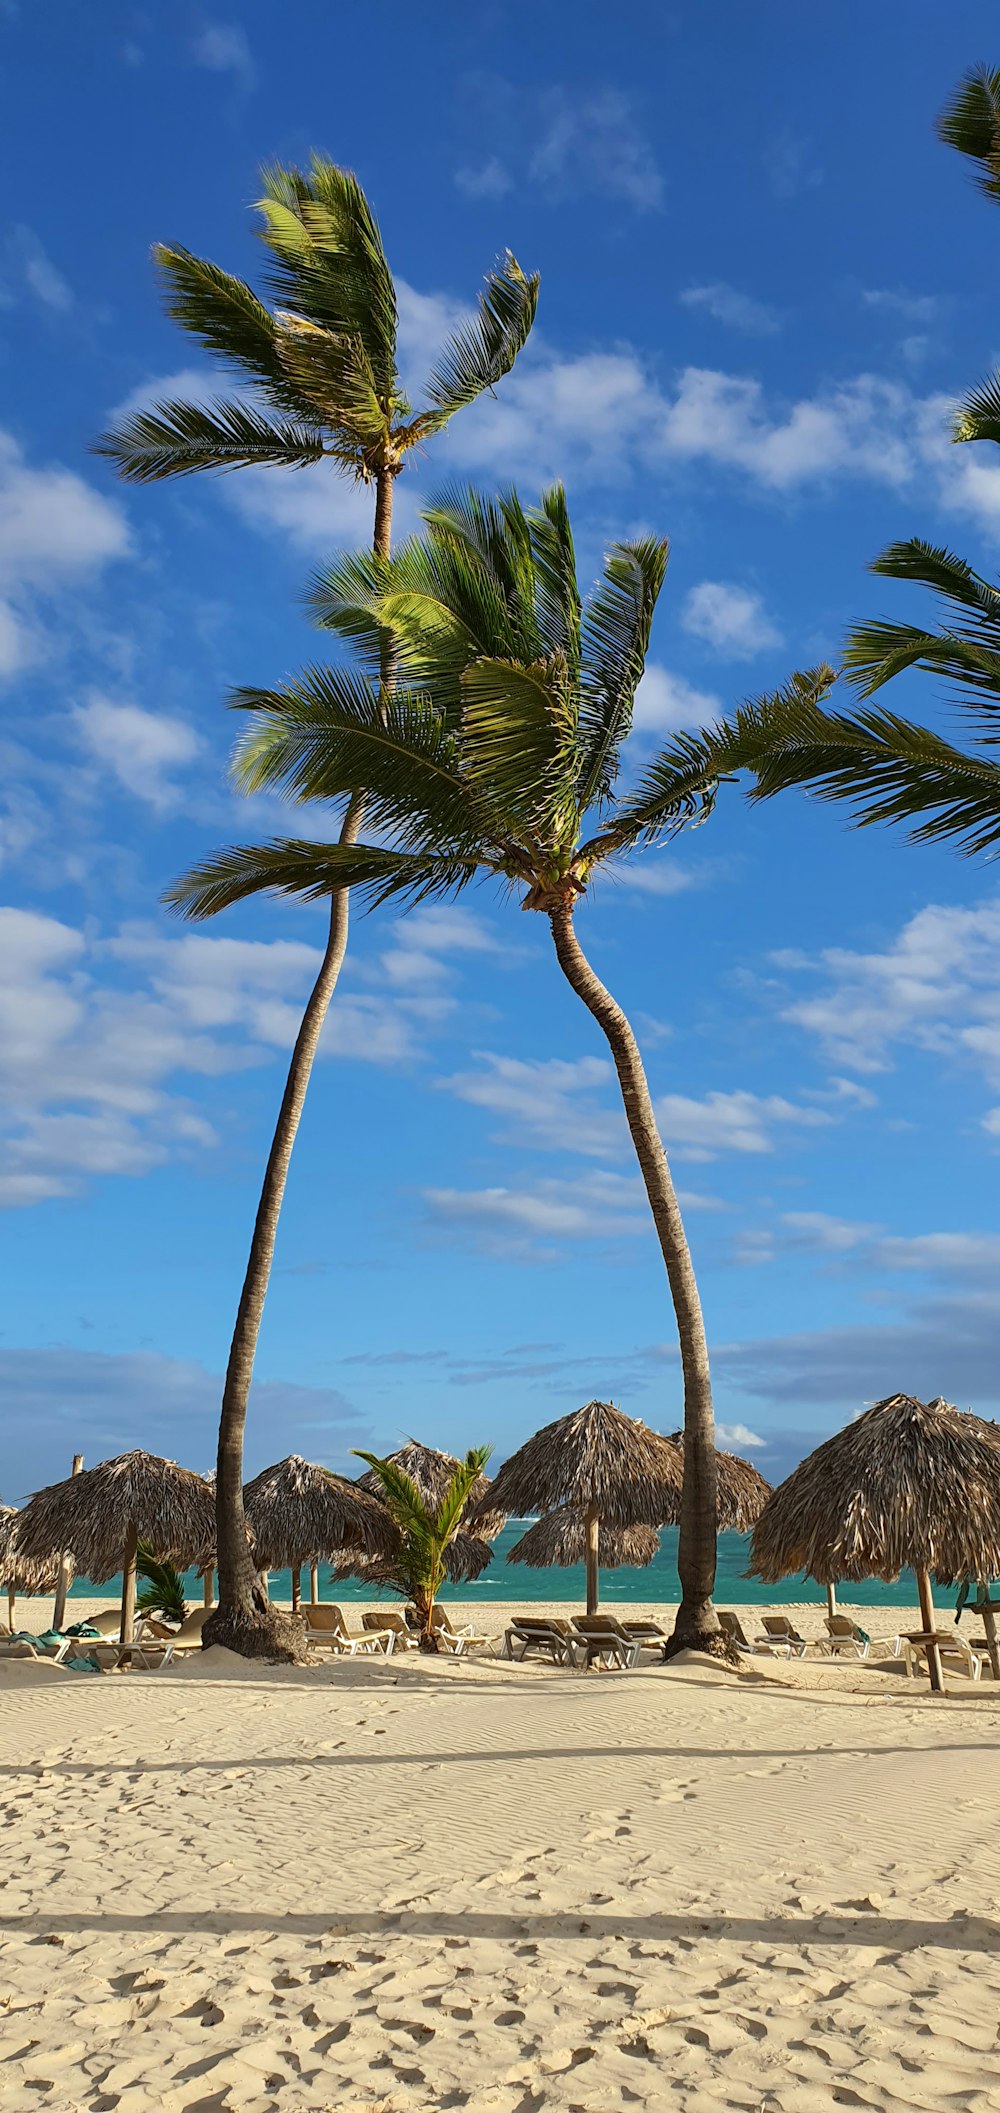 ヤシの木と茅葺き屋根の傘のある砂浜